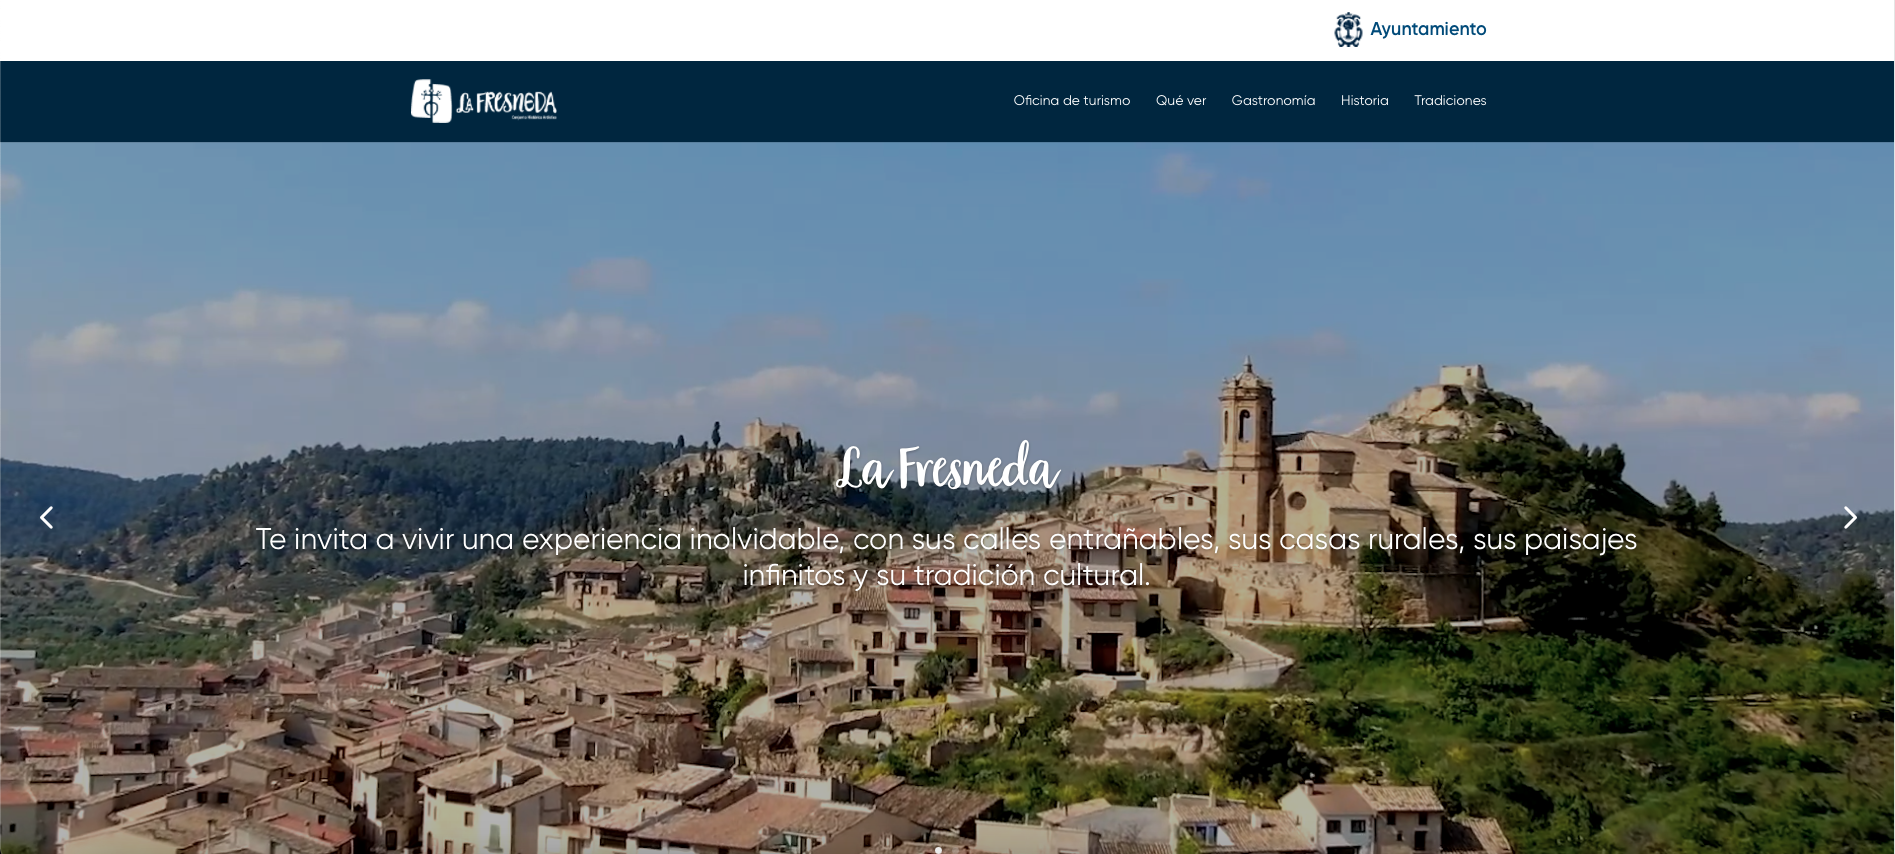 Oficina virtual y web de La Fresneda